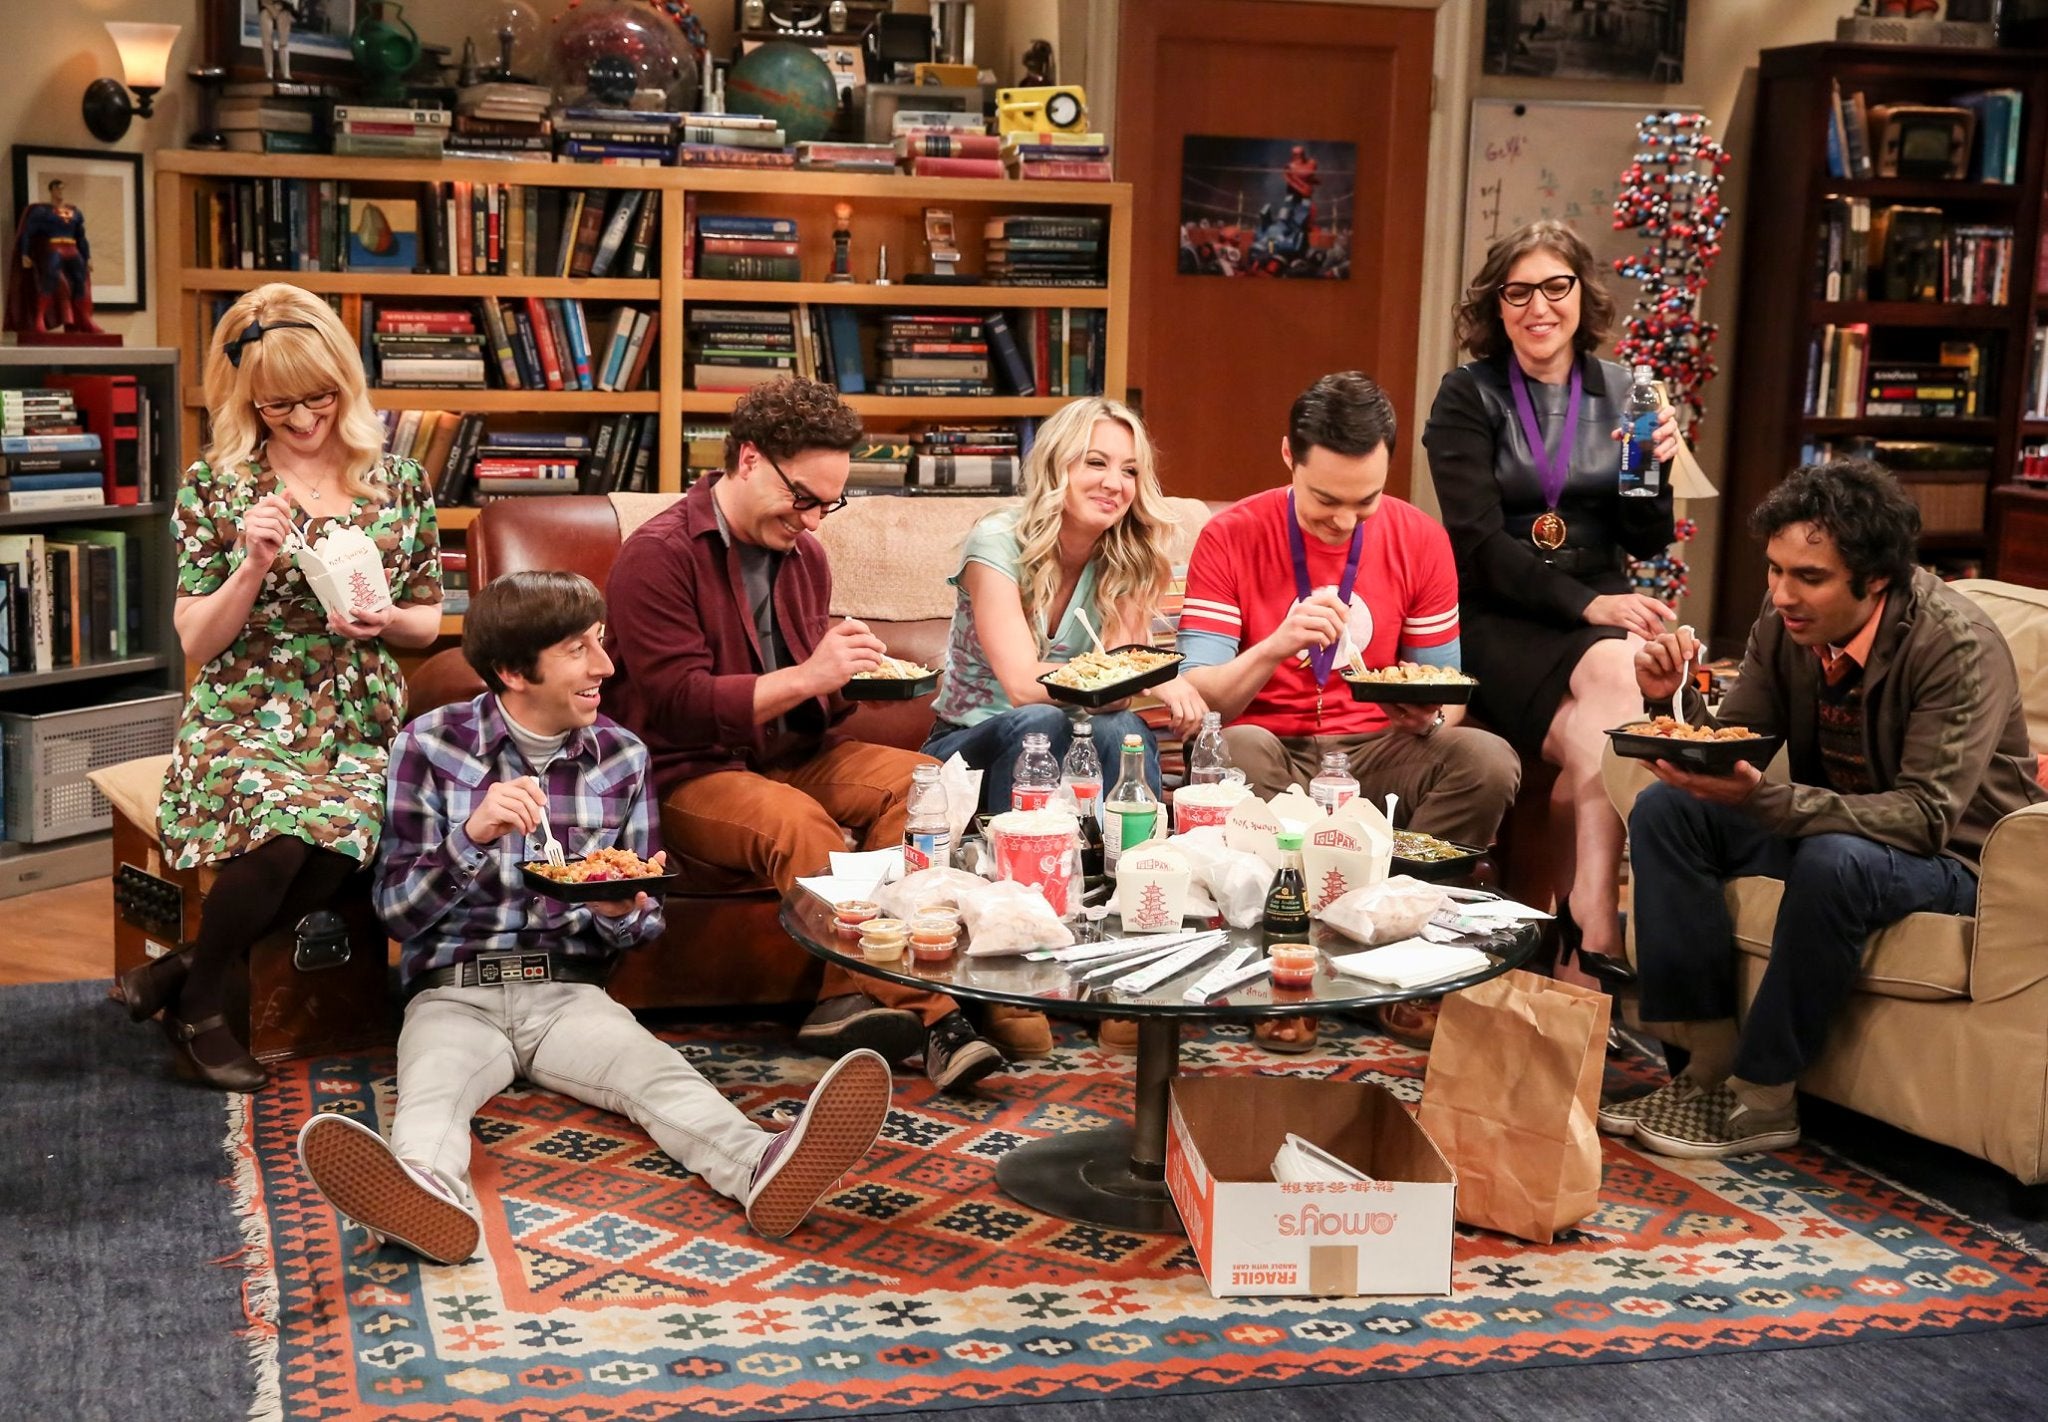 Visit "The Big Bang Theory" Sets at Warner Bros. Studio Tour Hollywood